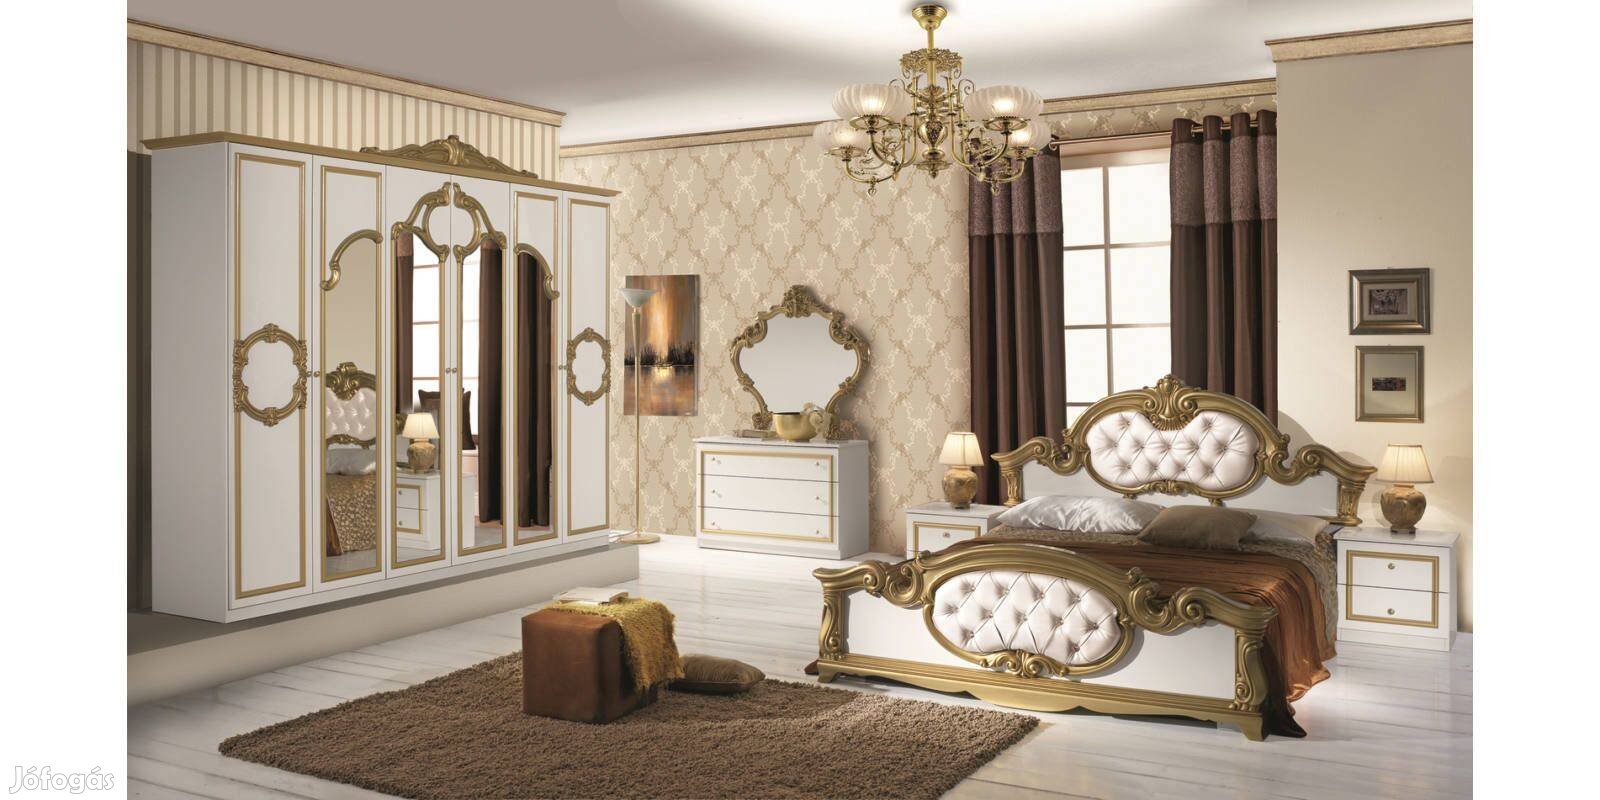 Barocco (fehér-arany, fekete-arany) olasz stílusú hálószoba garnitúra